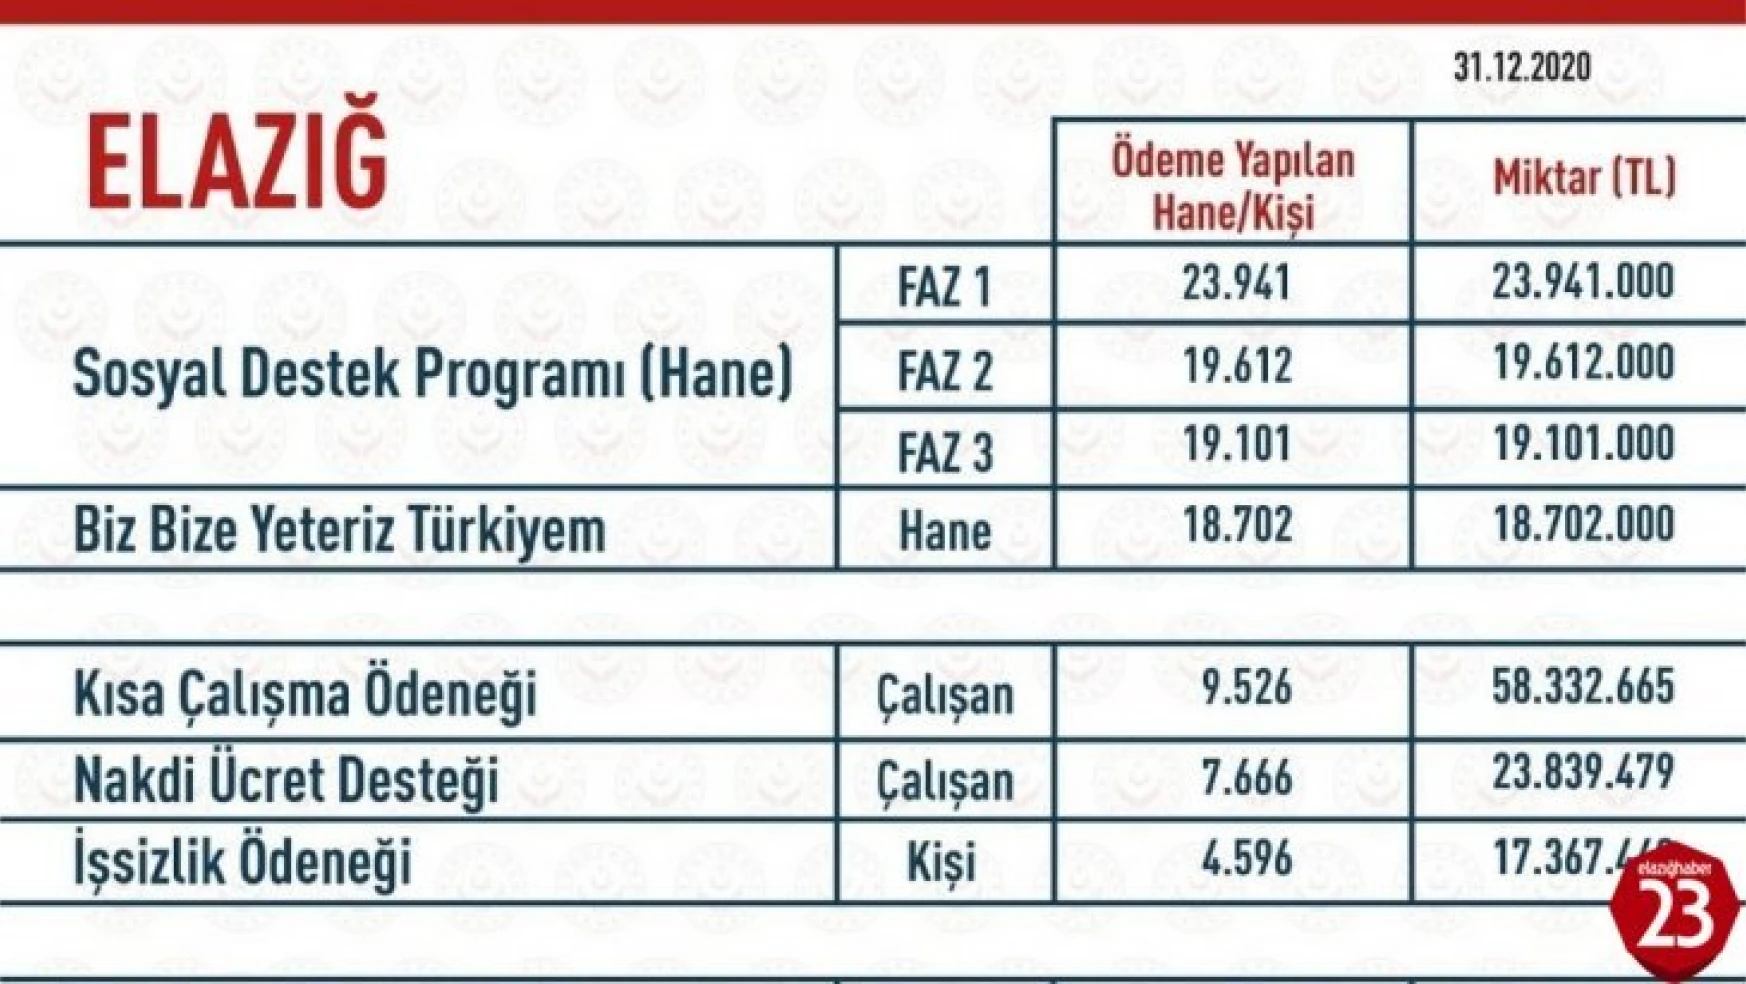 Elazığ'da Covid-19 destekleri kapsamında  185 milyon 863 bin TL ödendi